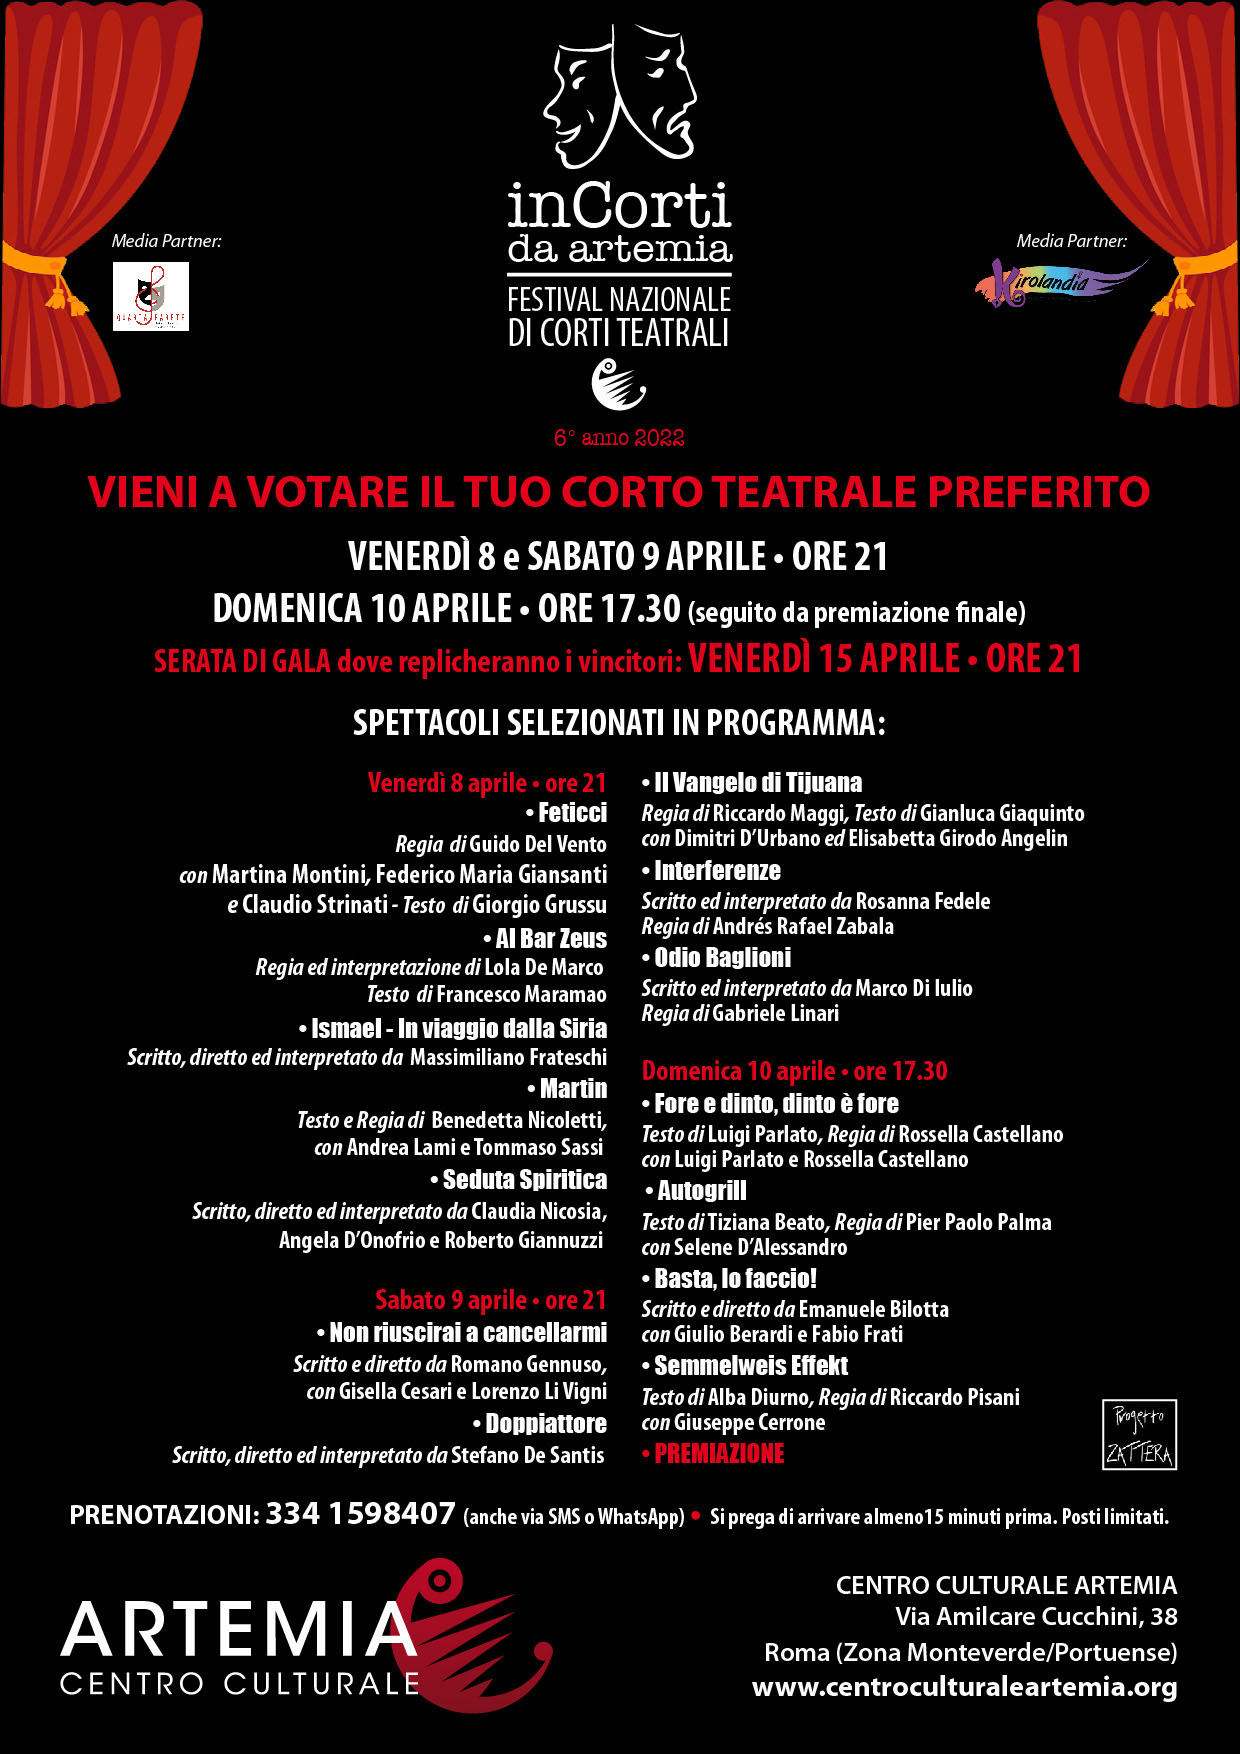 InCorti da Artemia – Festival Nazionale di Corti teatrali – 6° anno